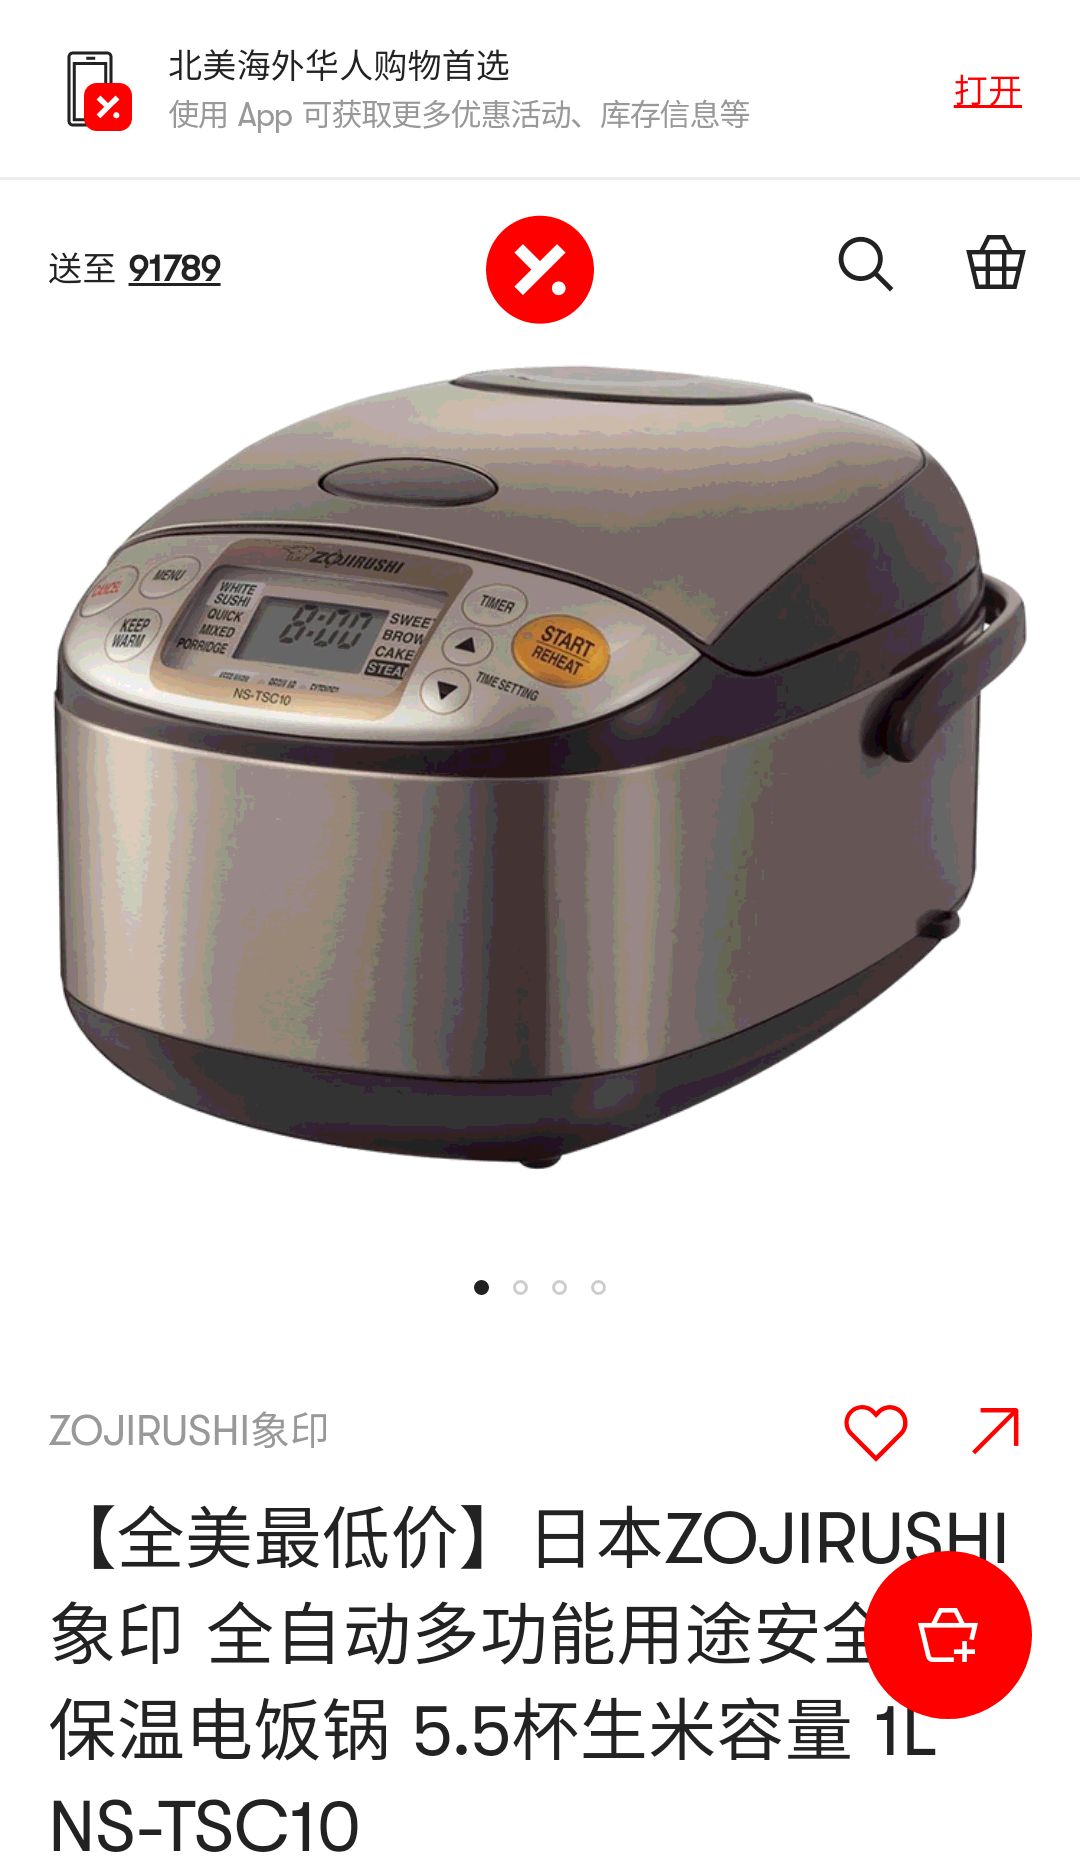 【全美最低价】日本ZOJIRUSHI象印 全自动多功能用途安全智能保温电饭锅 5.5杯生米容量 1L NS-TSC10 - 亚米